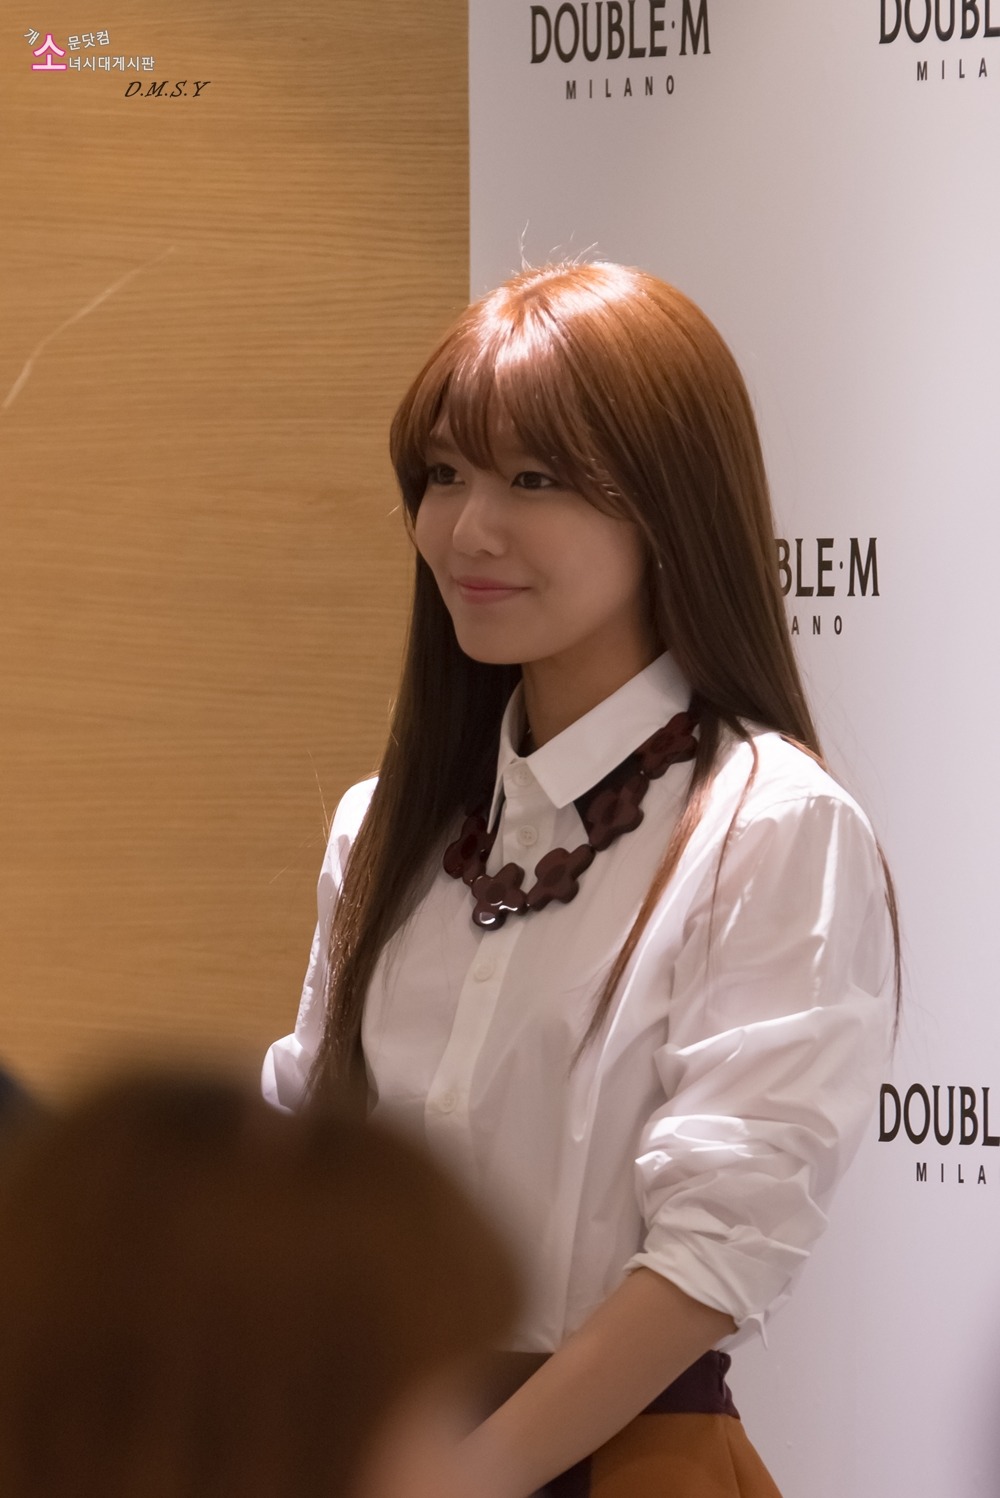 [PIC][23-07-2013]SooYoung xuất hiện tại buổi fansign thứ 3 cho thương hiệu "Double M" vào chiều nay   23191D4951EEA38403D78E